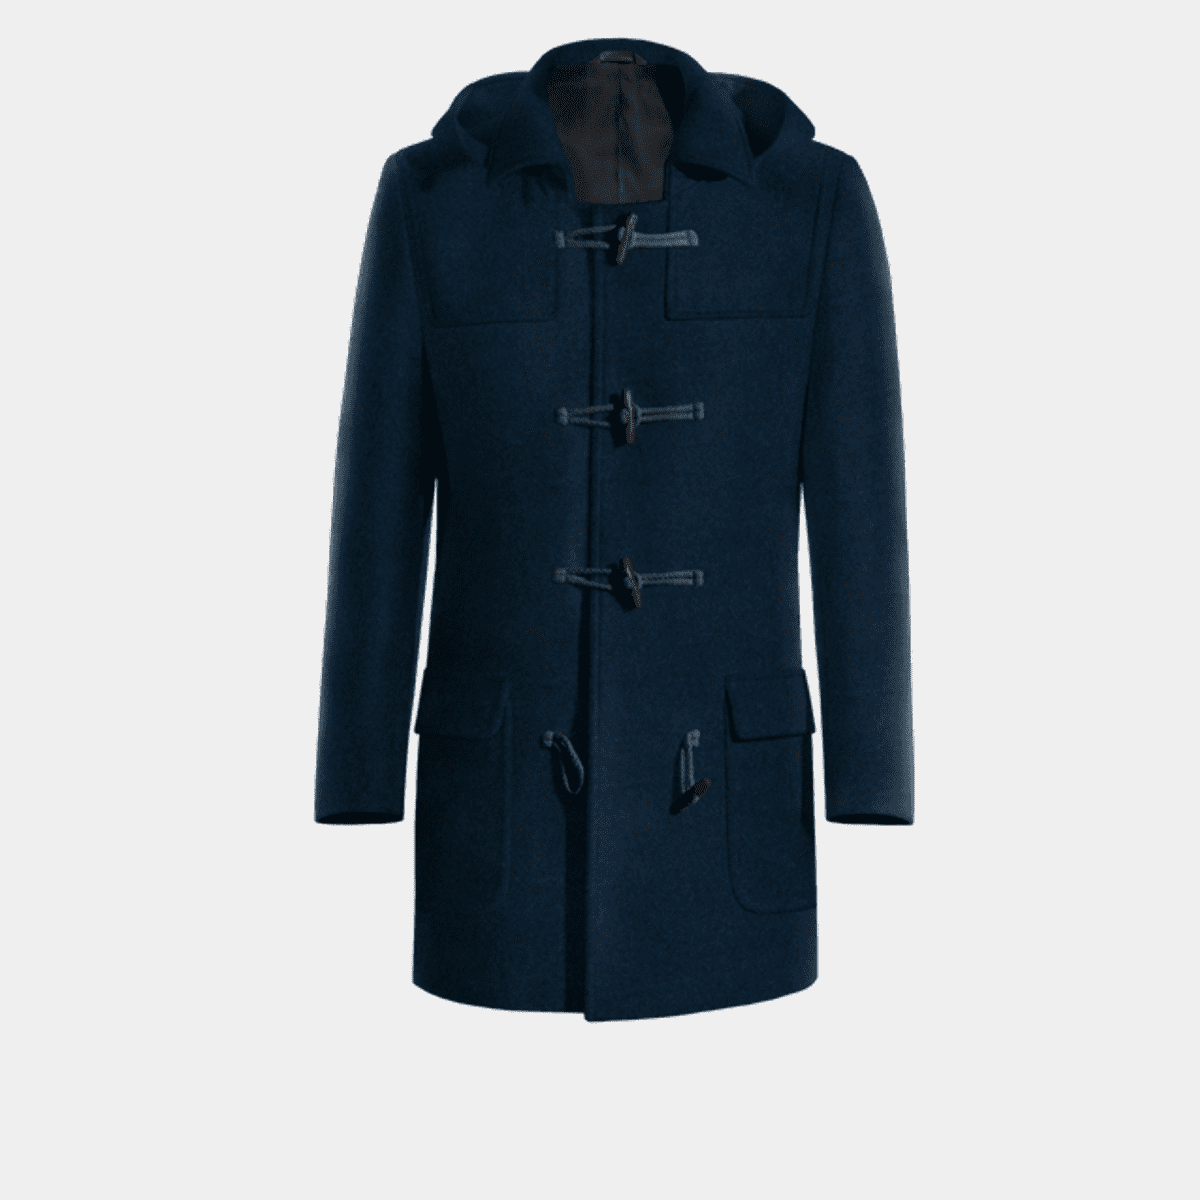 Blue Montgomery coat